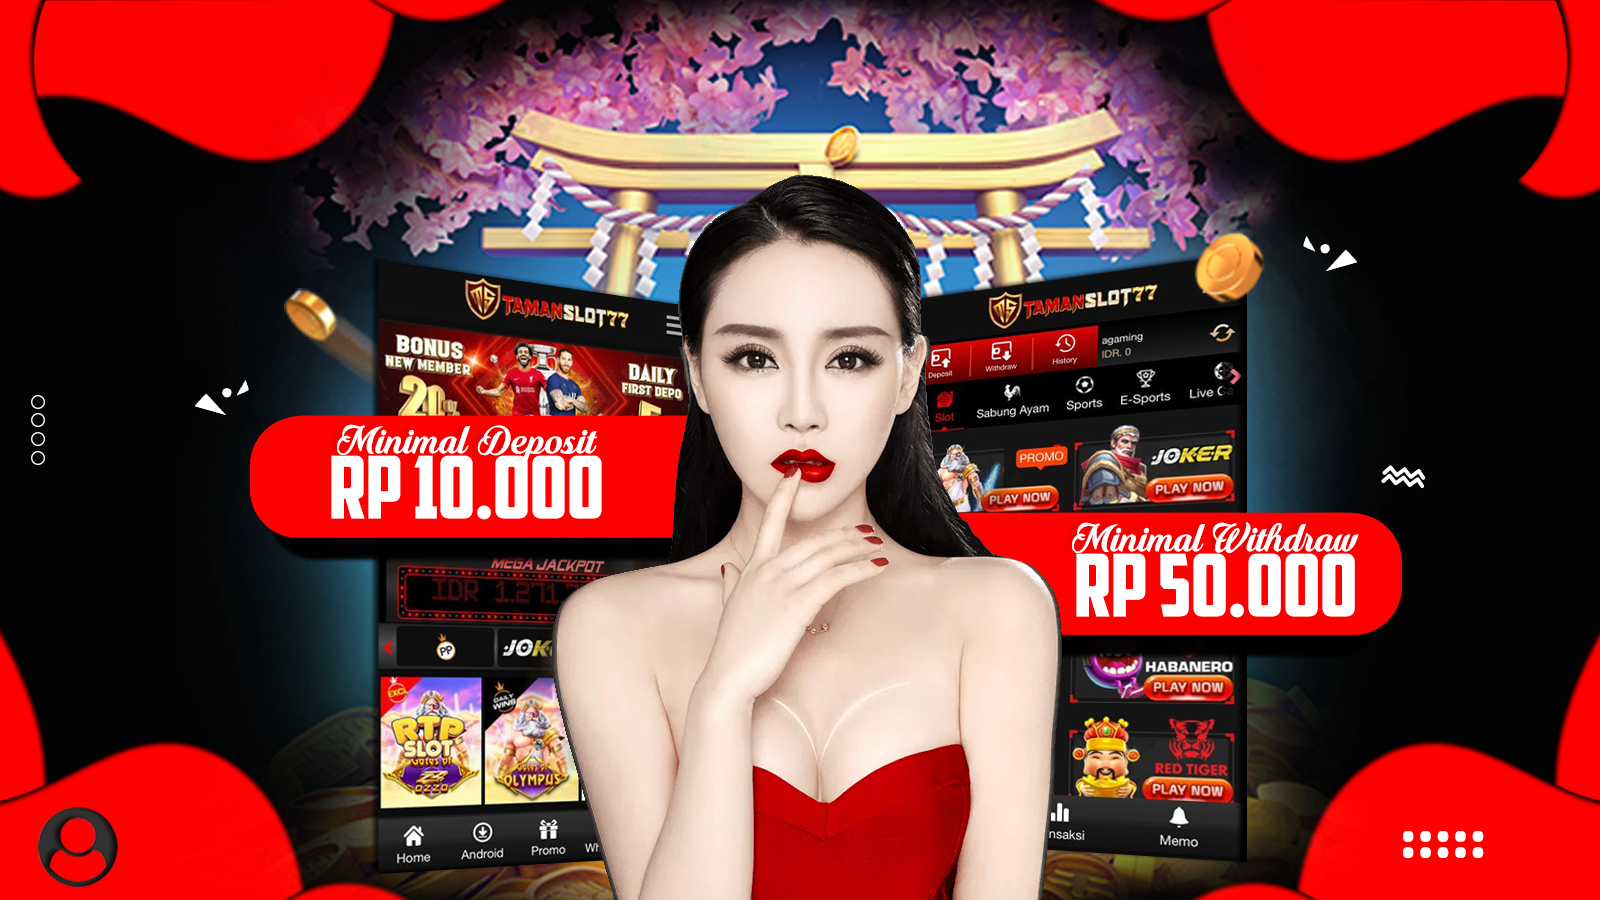 Temukan Sensasi Seru Tamanslot77: Situs Slot Paling Menguntungkan dengan Deposit Minimum Terjangkau Rp 10.000.